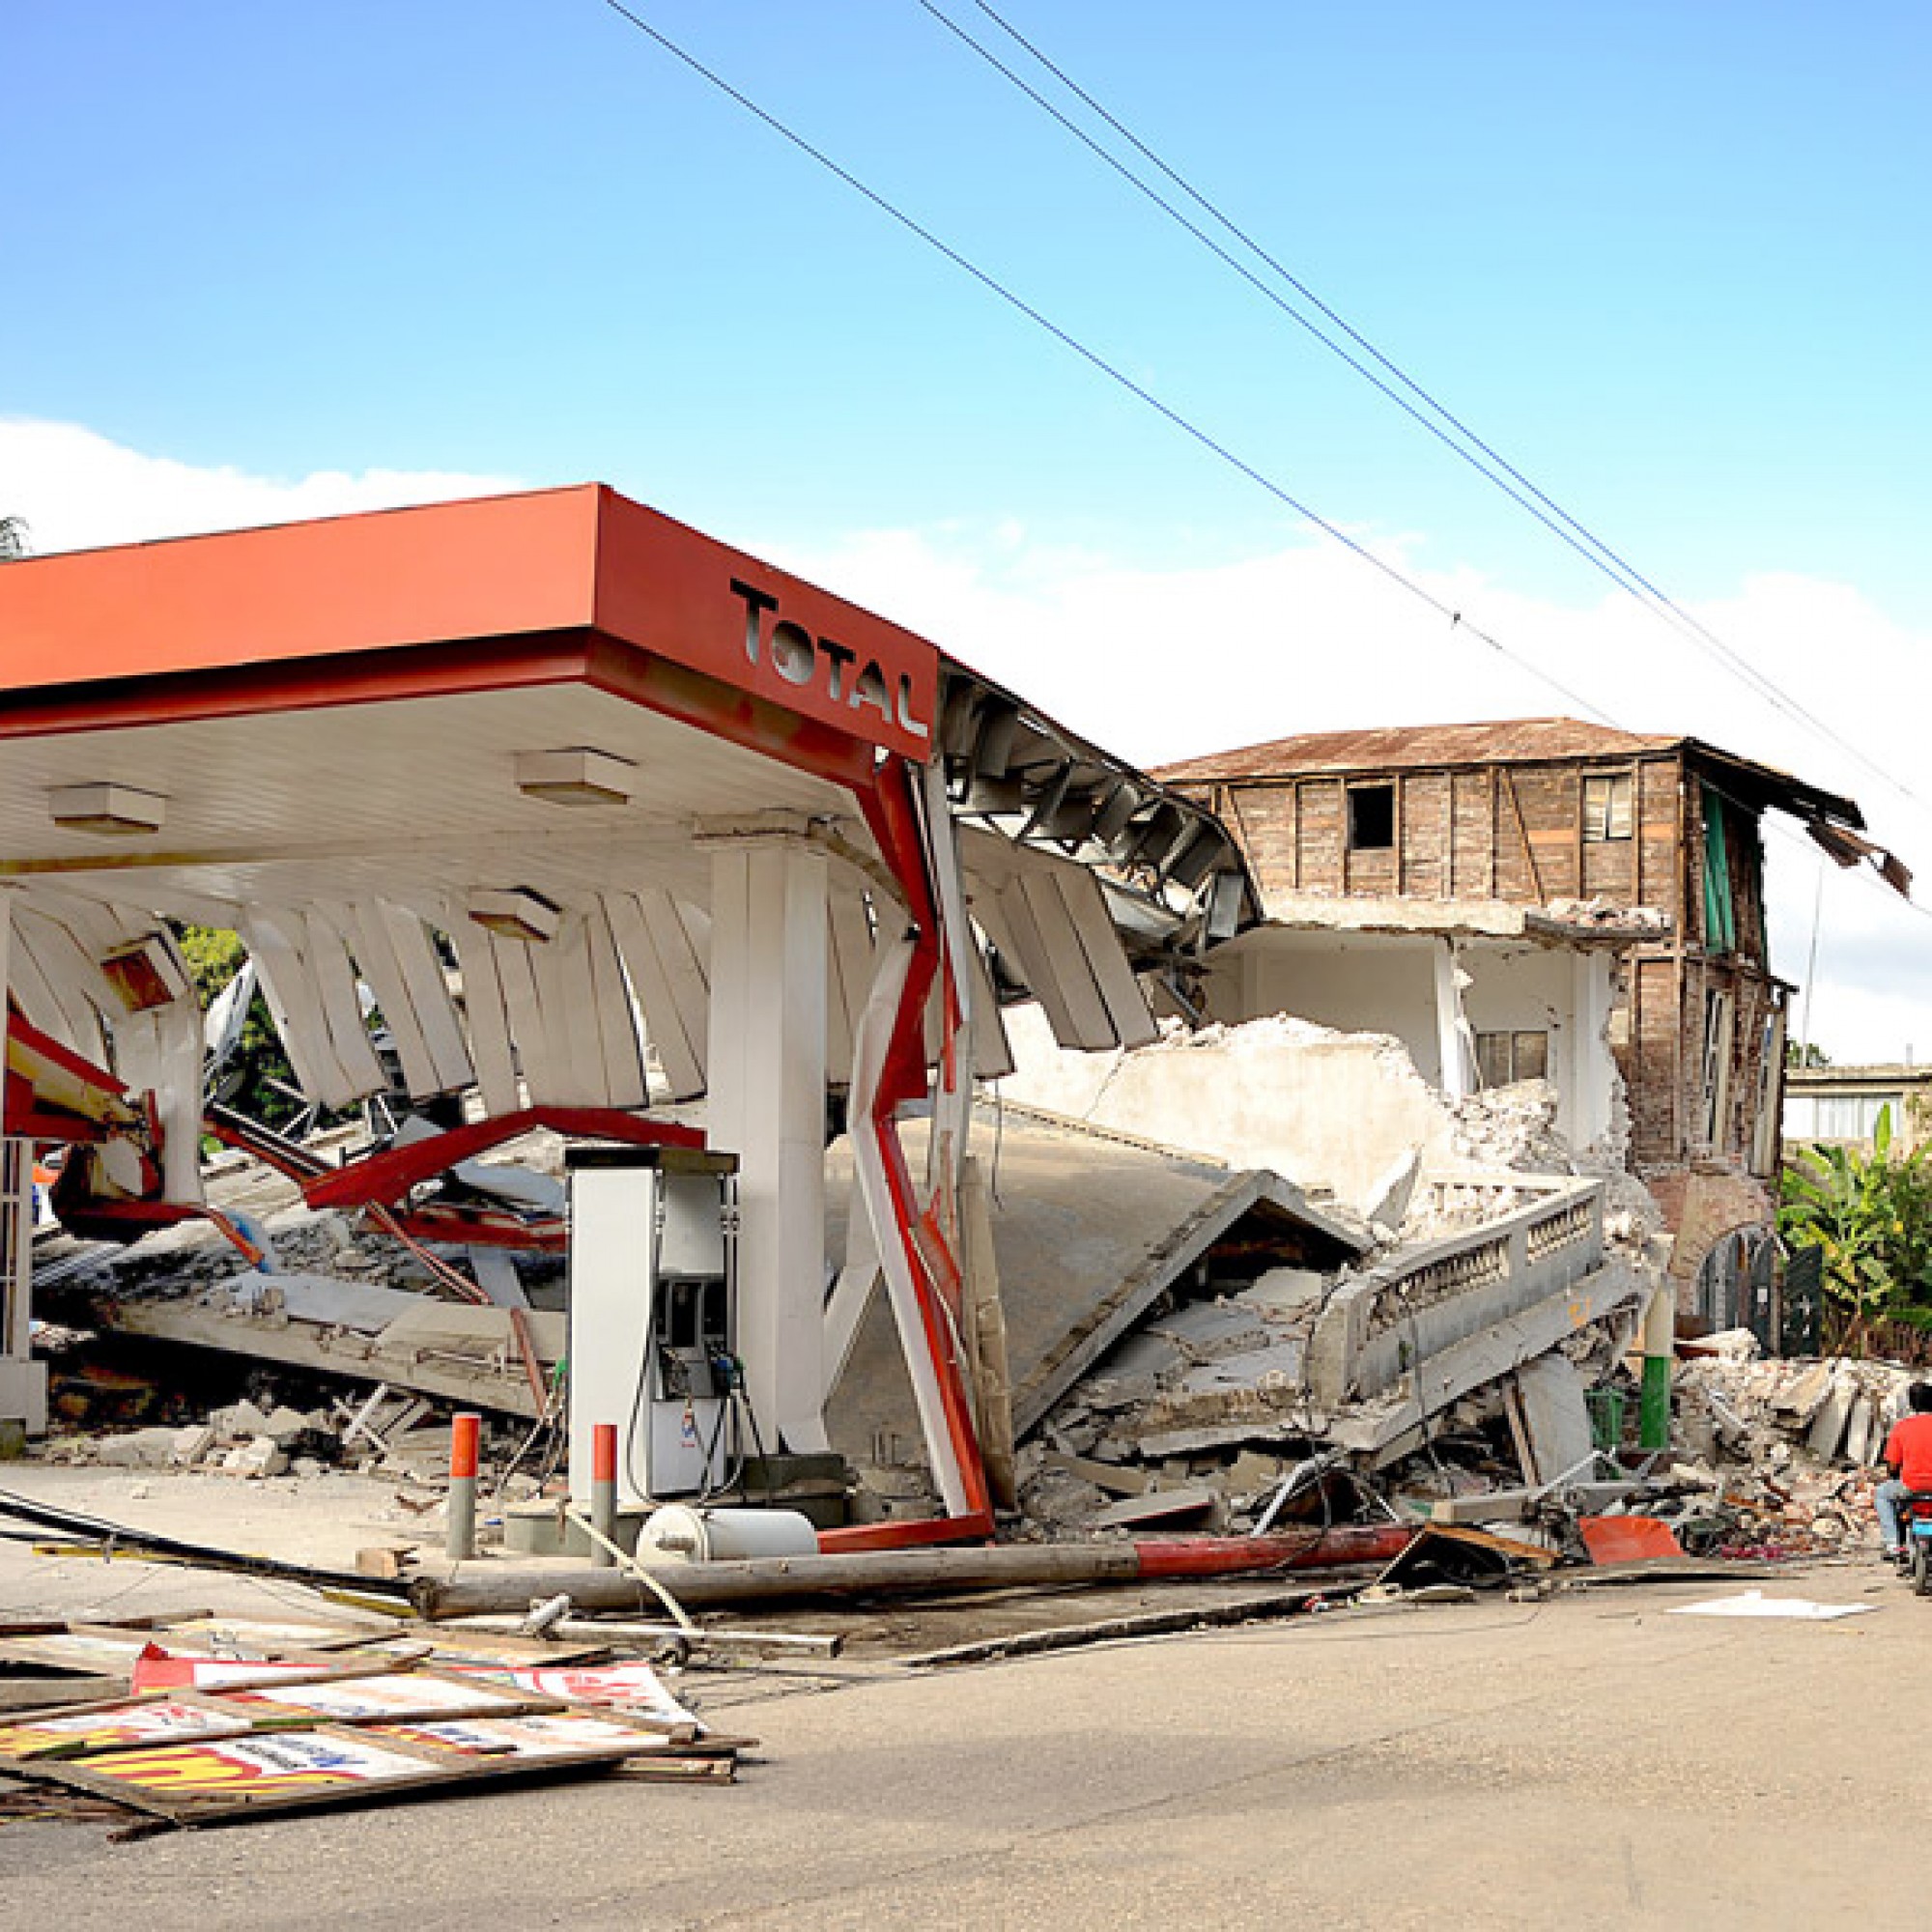 Im 2010 wurde auch die haitianische Stadt Jacmel vom Erdbeben massiv zerstört.  Rund 70 Prozent der Häuser waren beschädigt worden. (Gemeinfrei, wikimedia.org)  